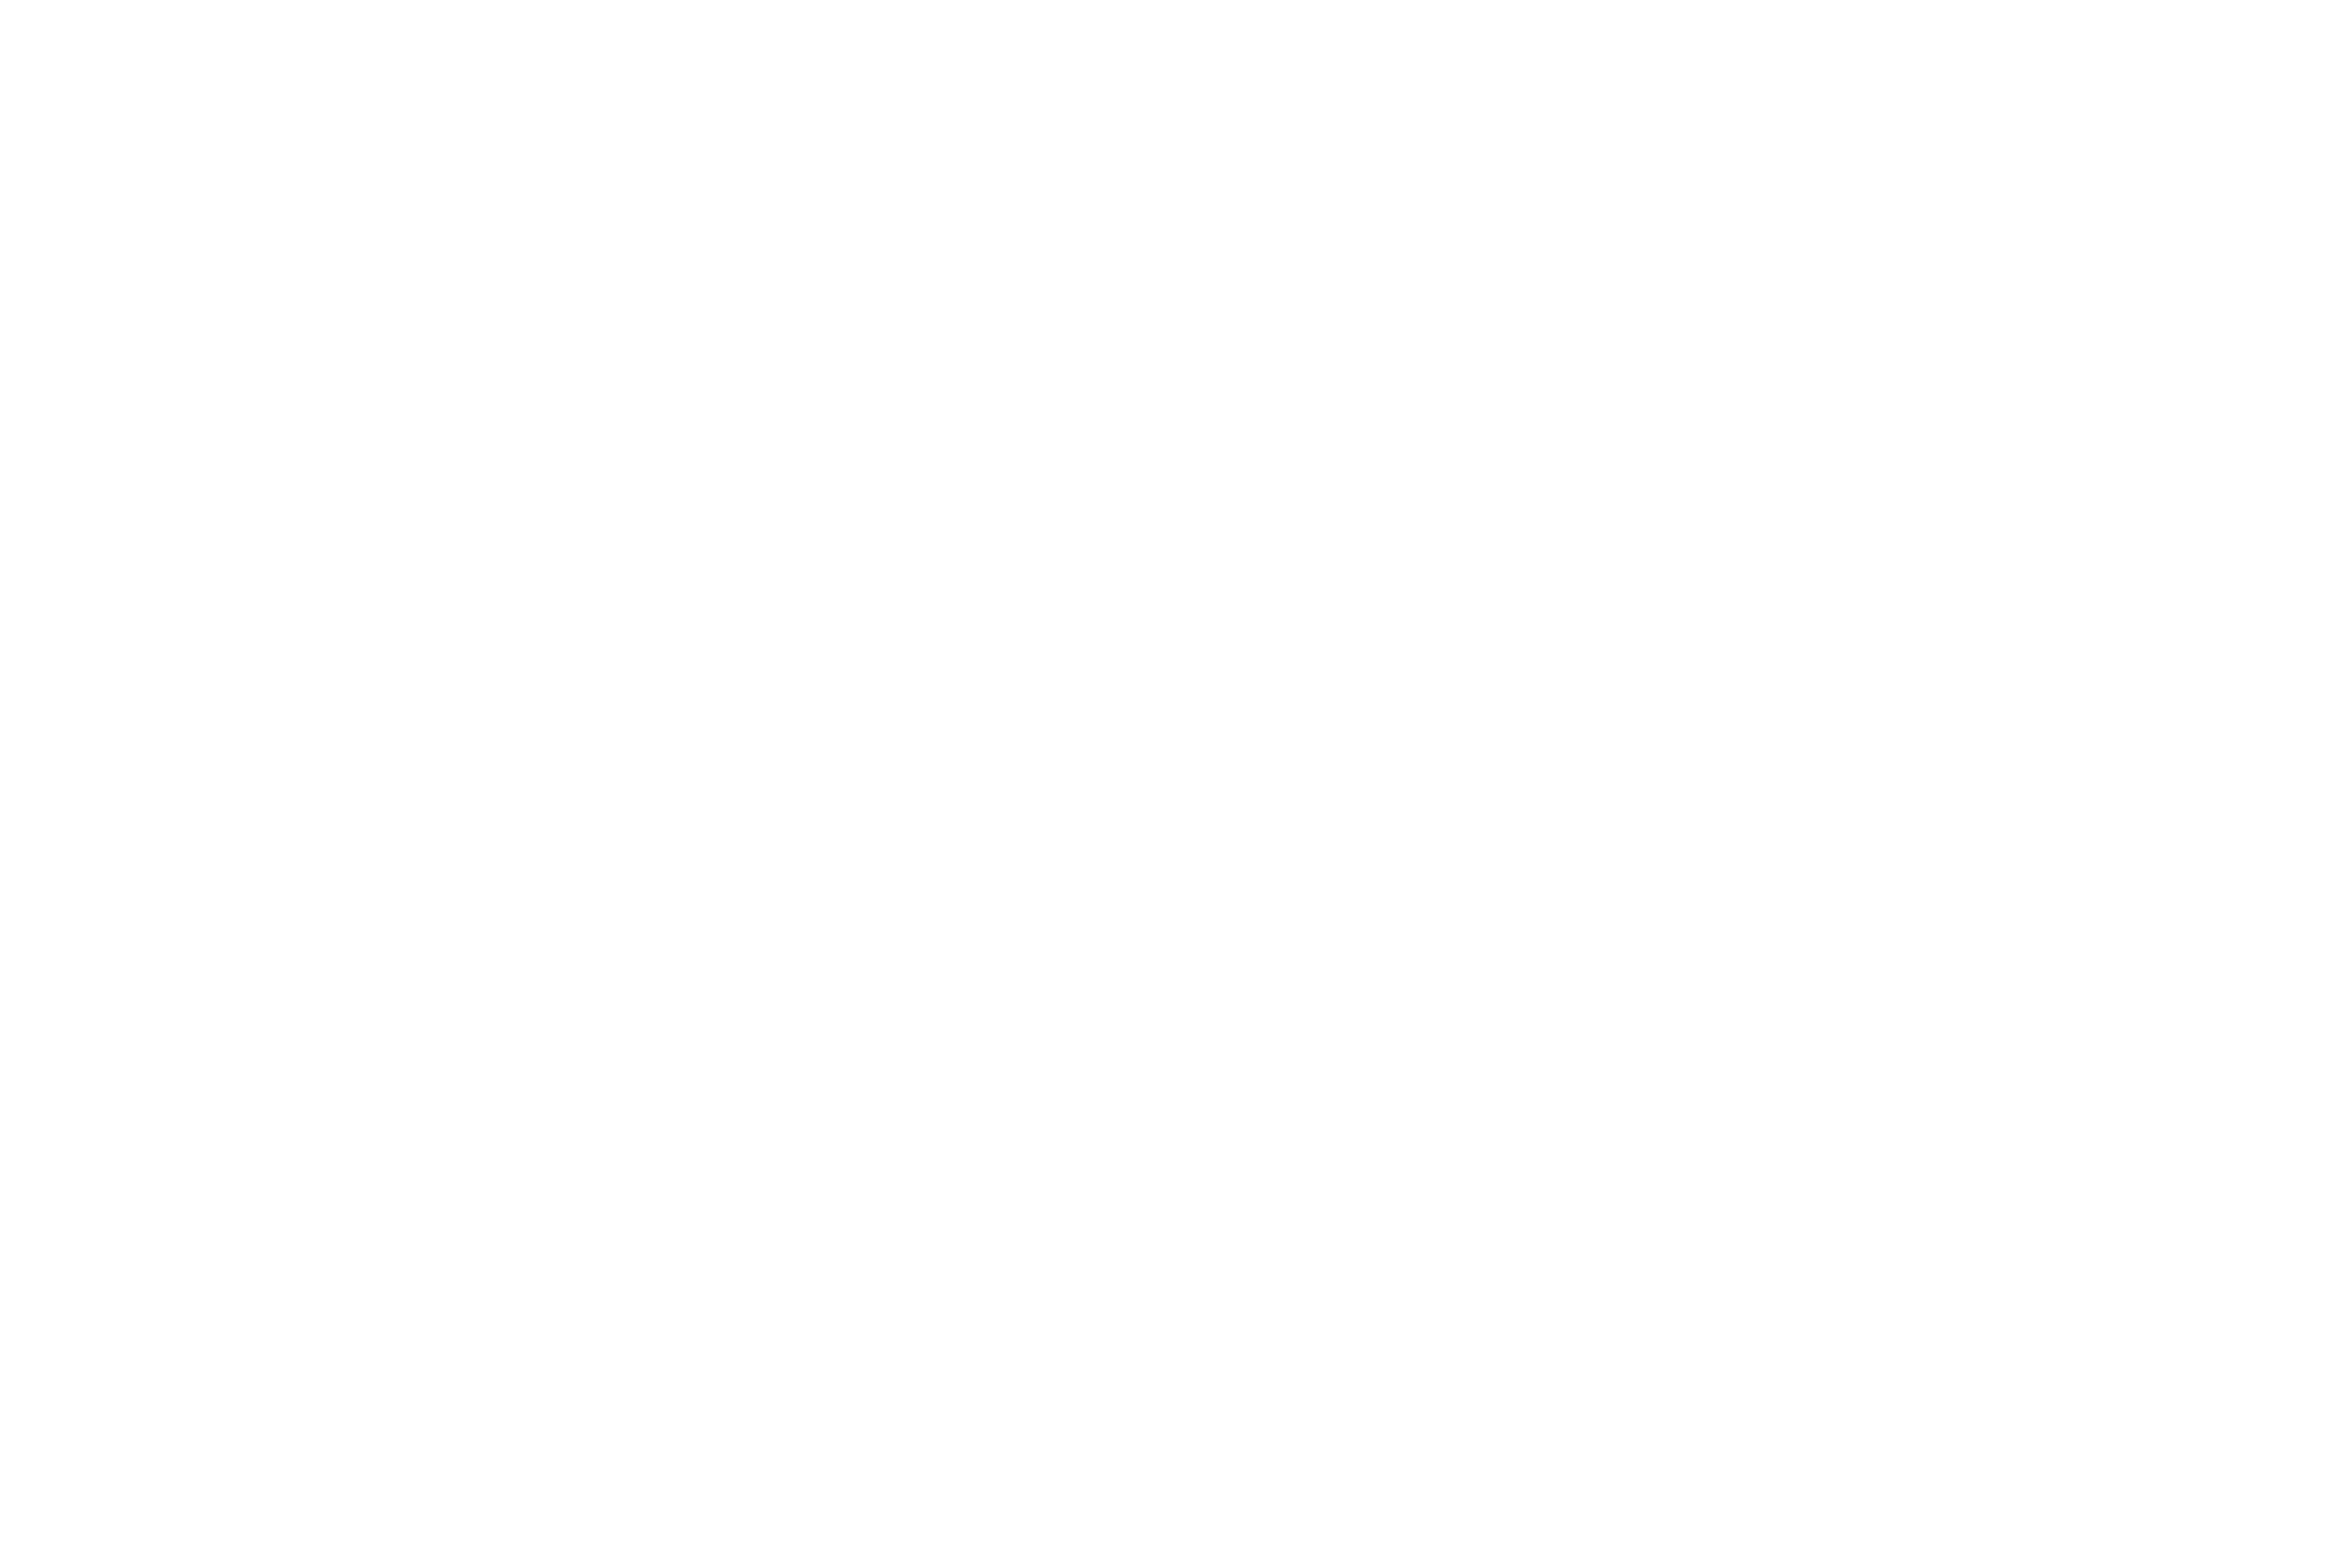 Keith Dutill